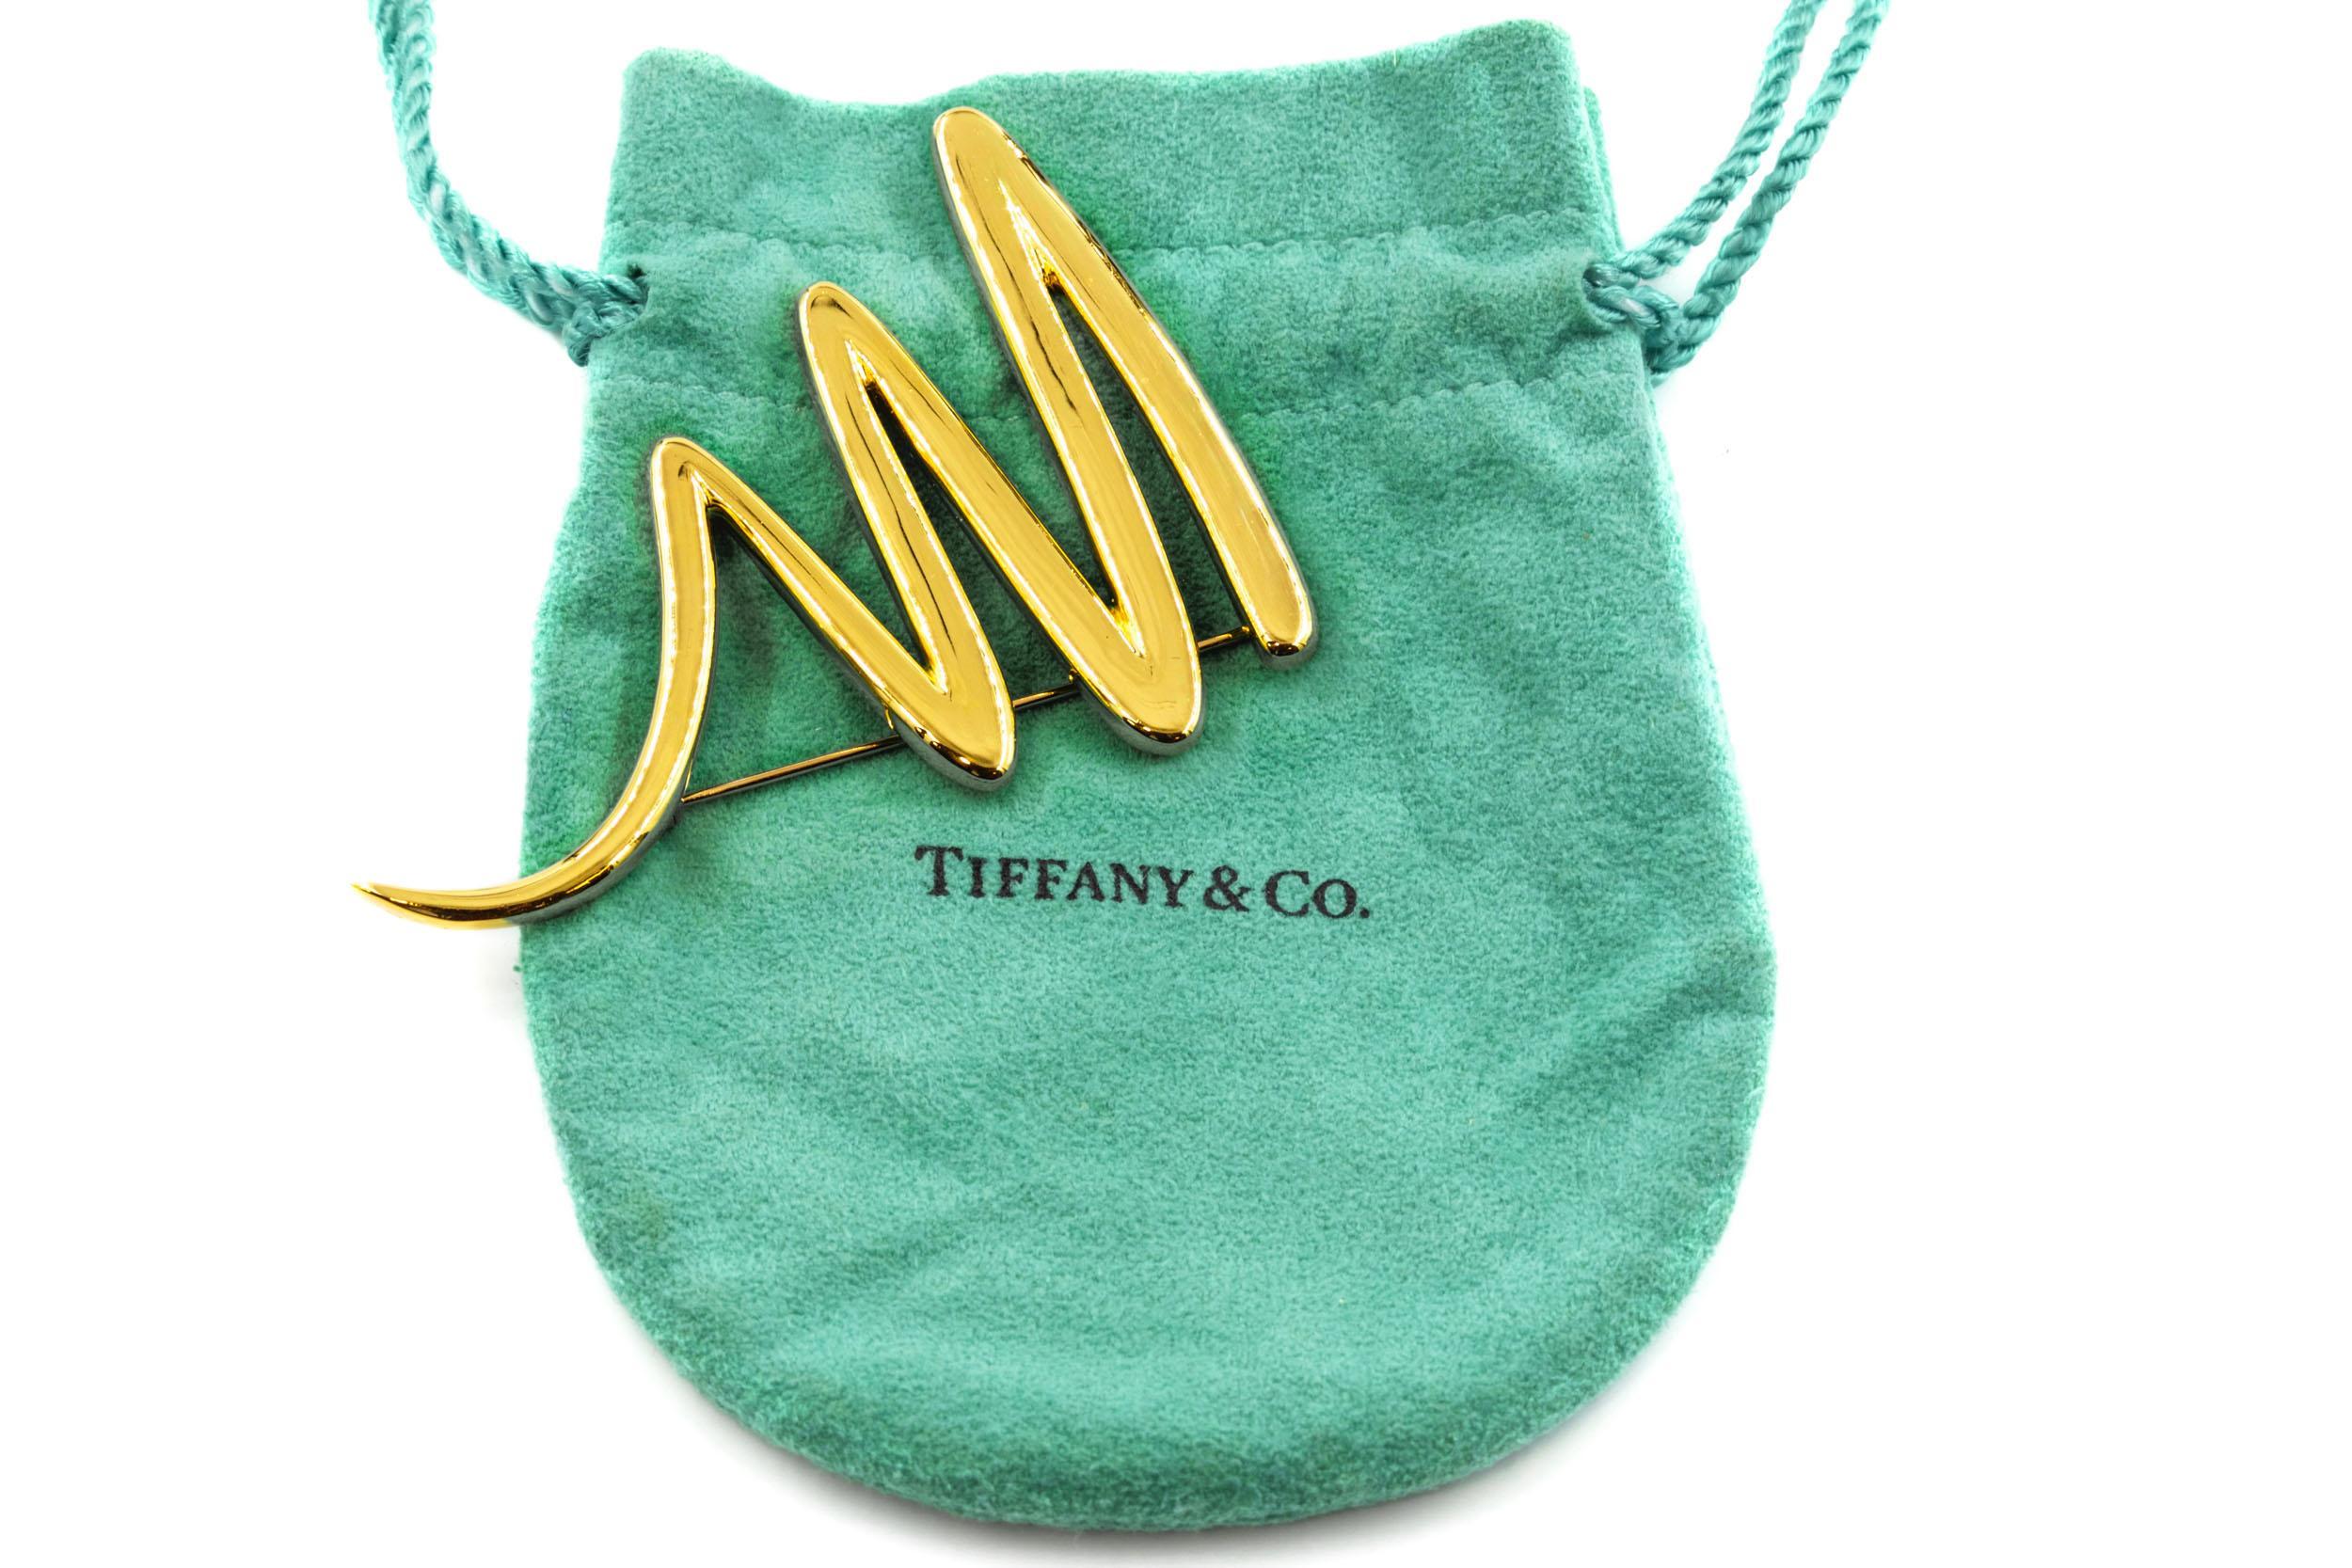 PALOMA PICASSO FOR TIFFANY & CO.
Circa 1983, con custodia originale con cordoncino di Tiffany & Co.
Articolo # 010SIU17A 

Una delle versioni più sostanziose di questo iconico disegno di Paloma Picasso per Tiffany & Co. ha un peso totale di 25,3